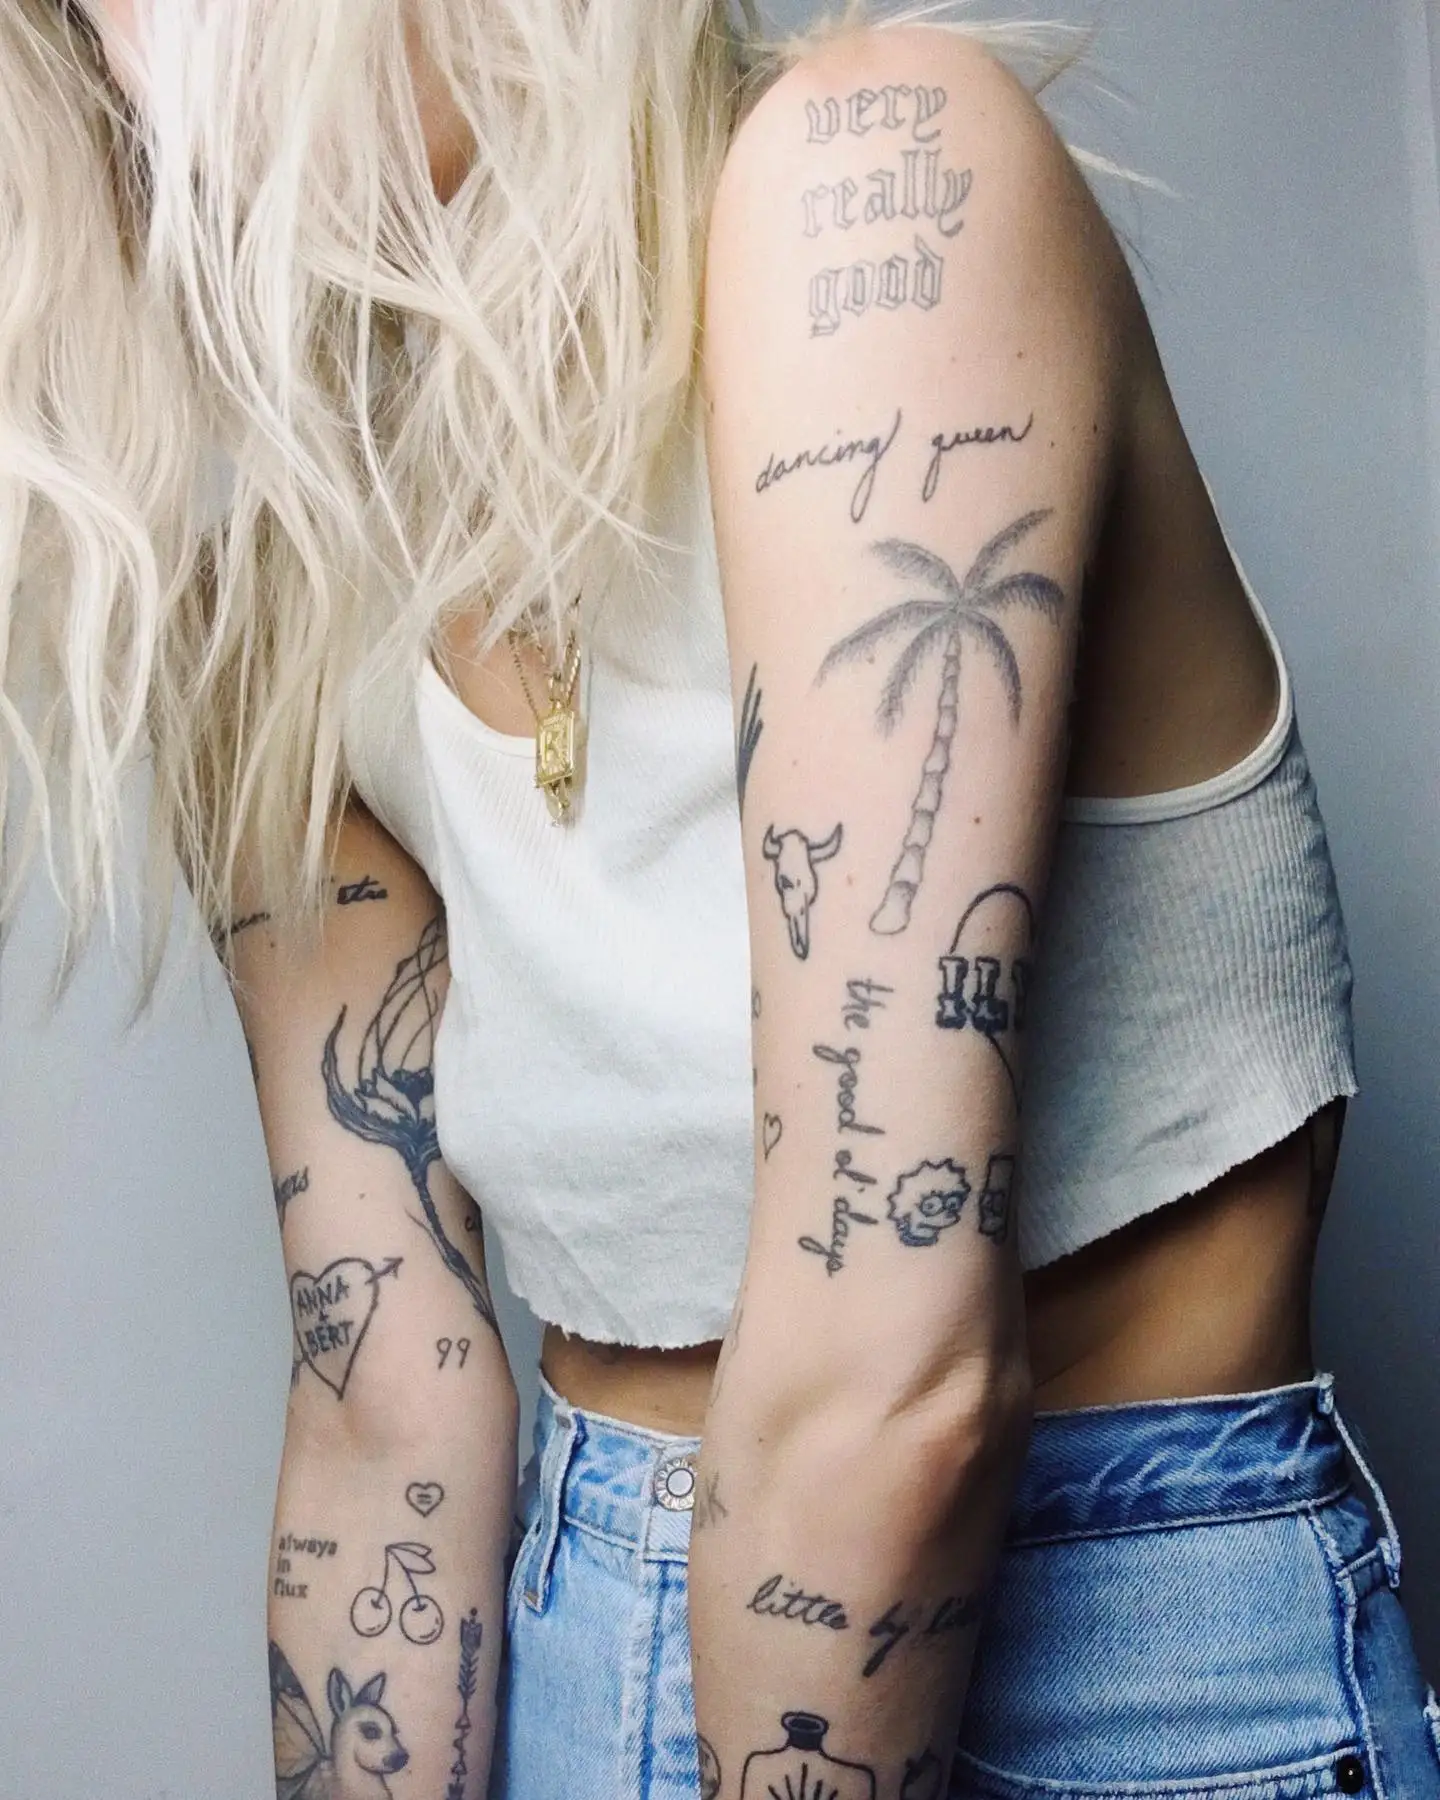 27 Tiny Tattoos That Will Make A Big Statement - Brit + Co